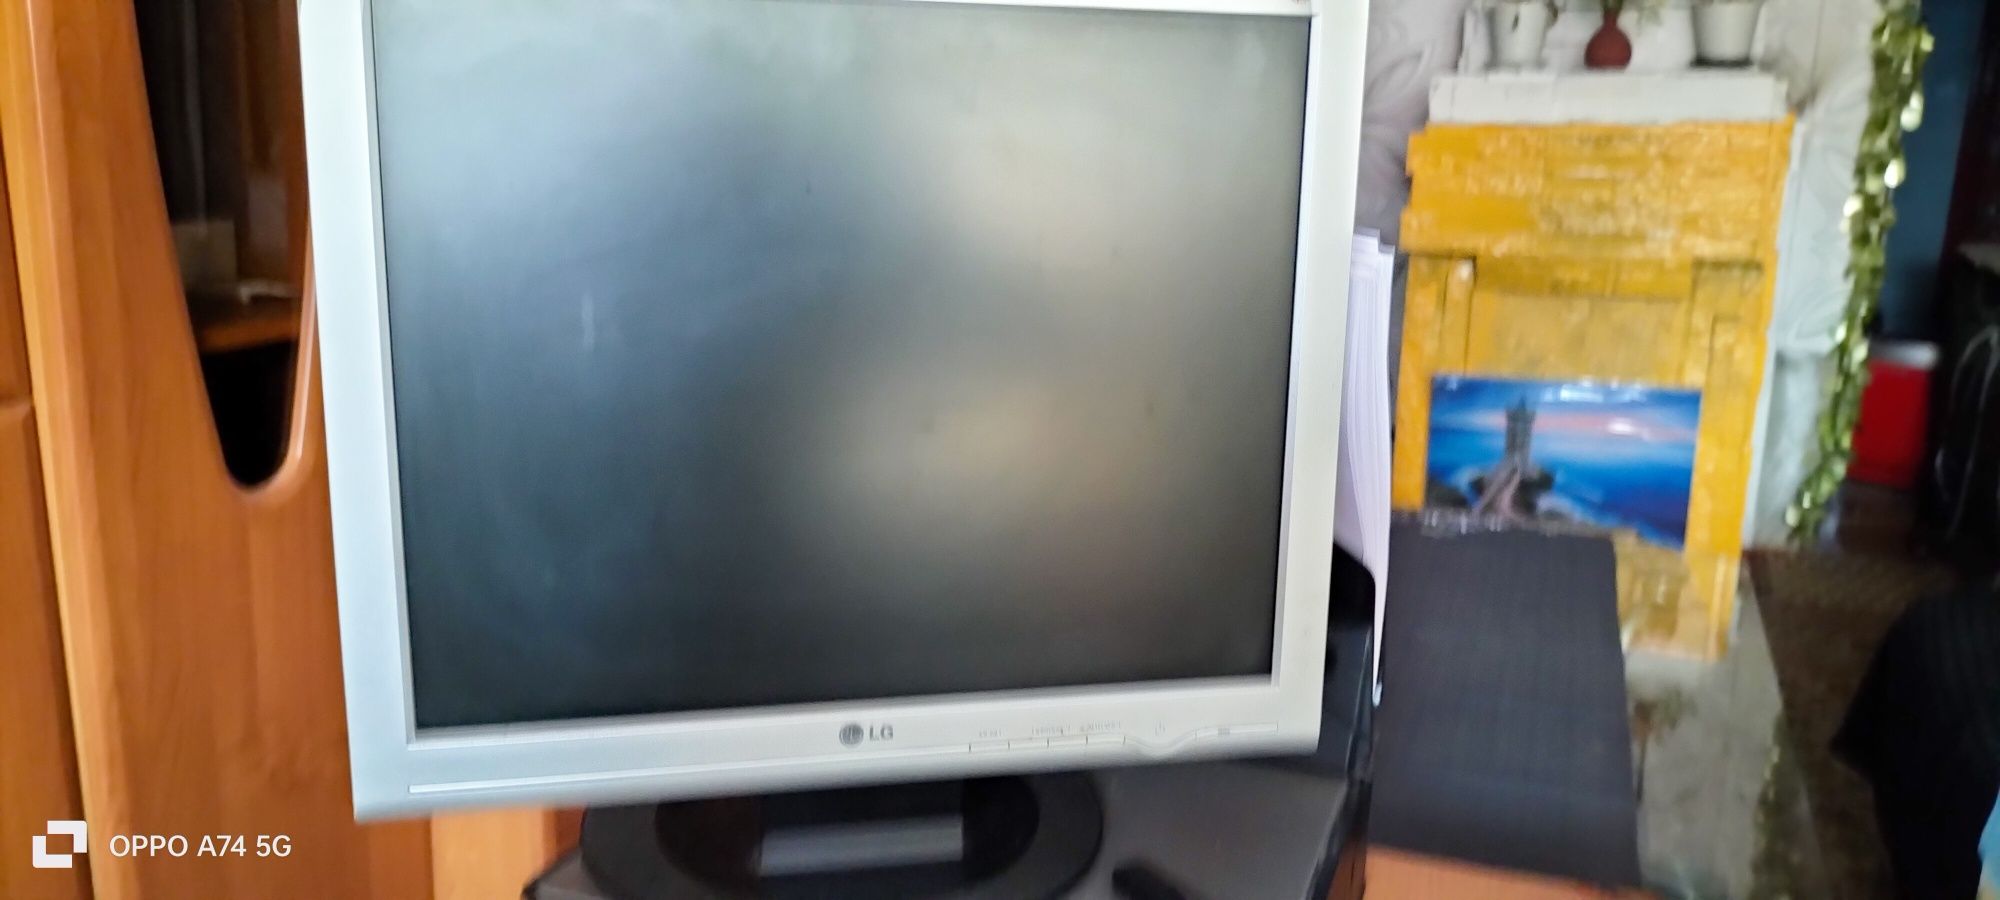 Komputer monitor klawiatura myszka